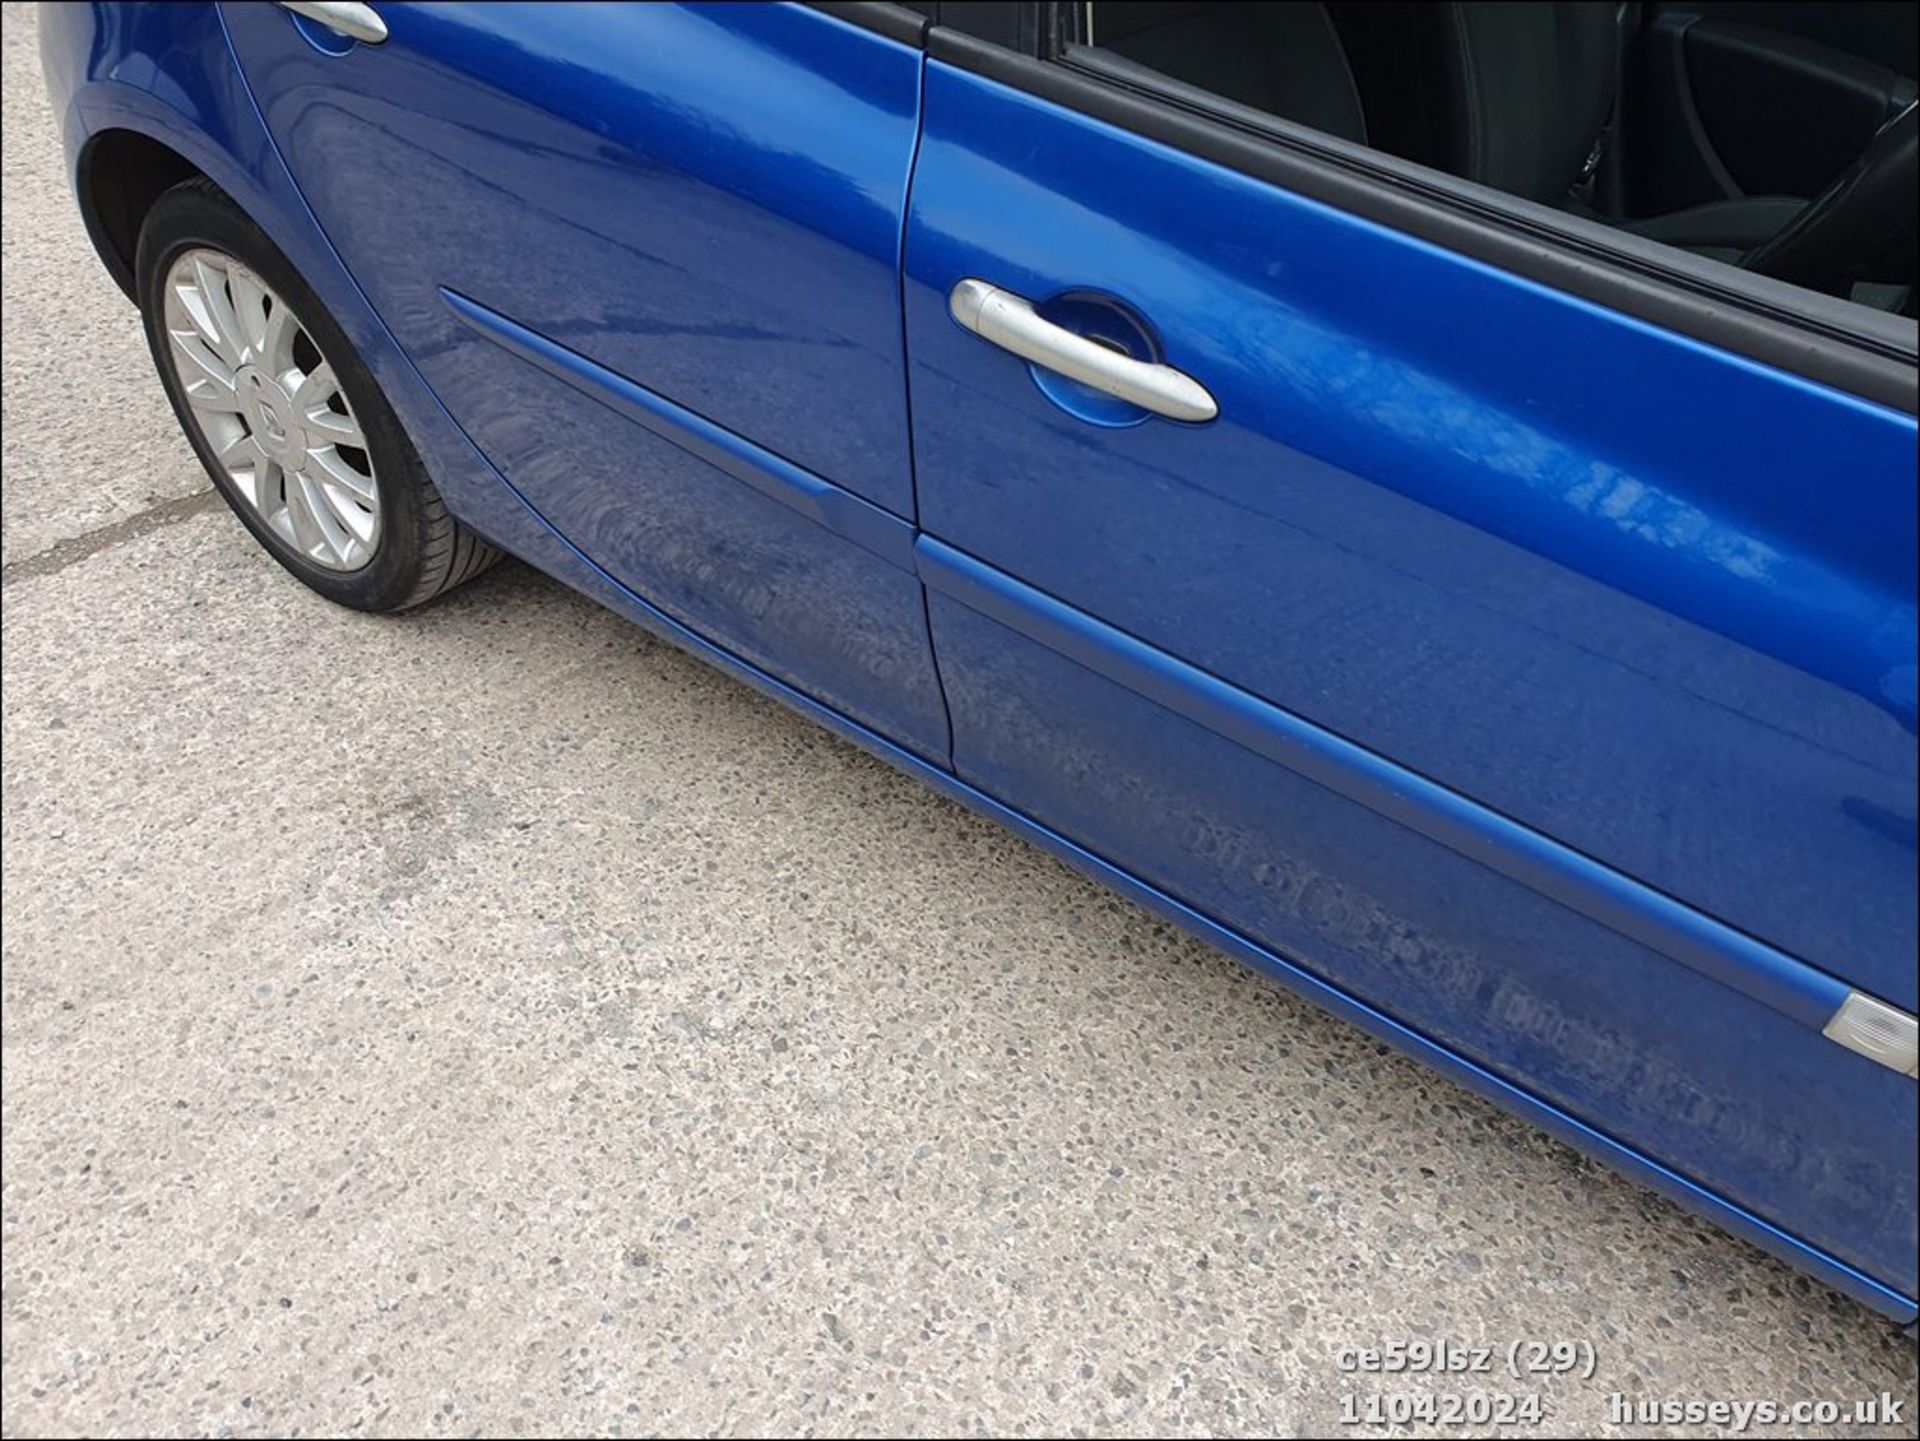 09/59 RENAULT CLIO DYNAMIQUE DCI - 1461cc 5dr Hatchback (Blue, 126k) - Image 30 of 47